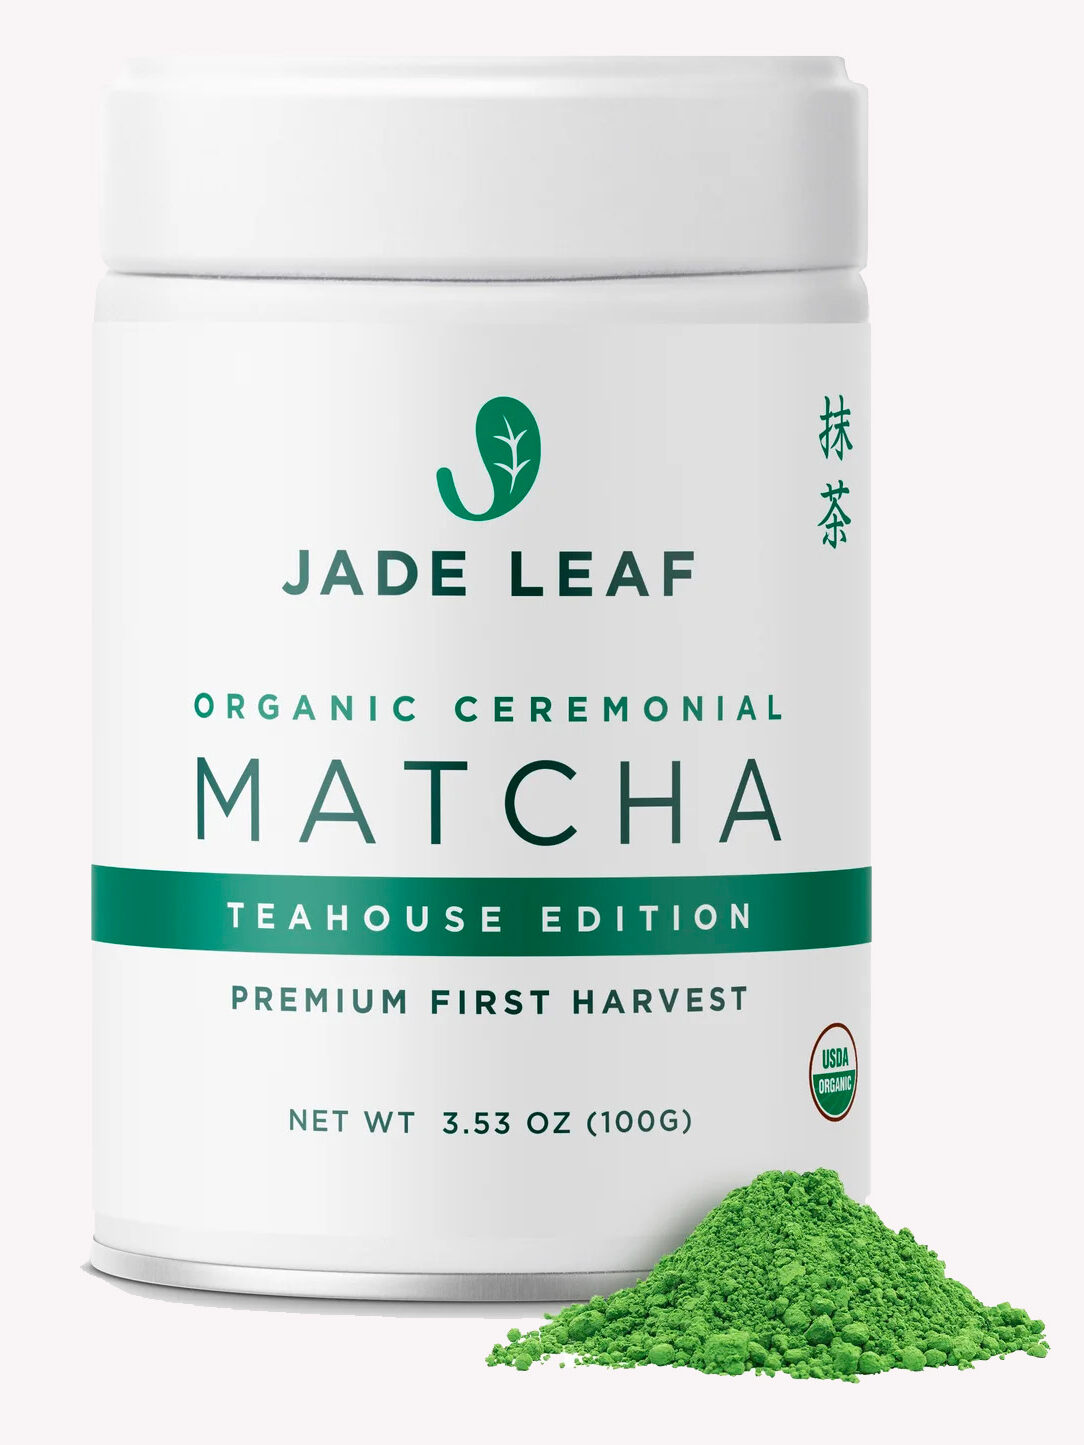 Matcha tea from Jade Leaf